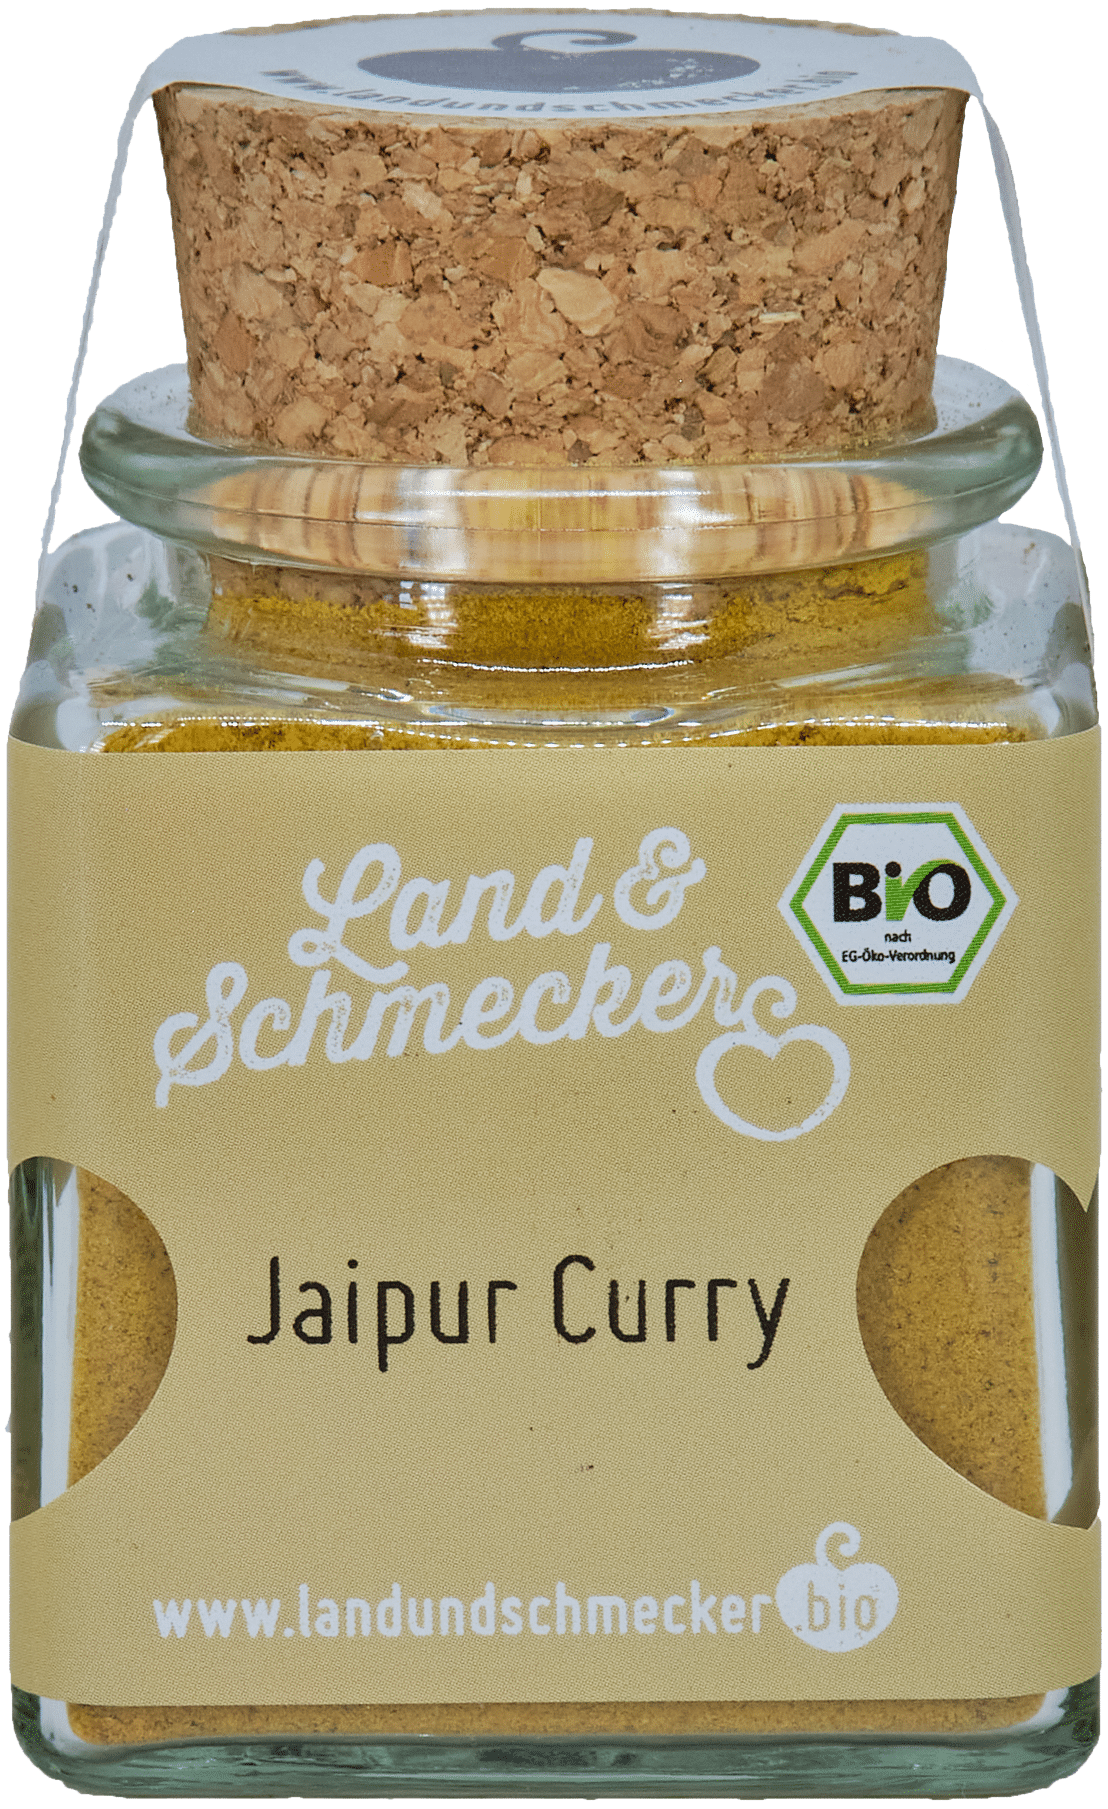 Land&Schmecker Bio Jaipur Curry kaufen | Leni & Hans